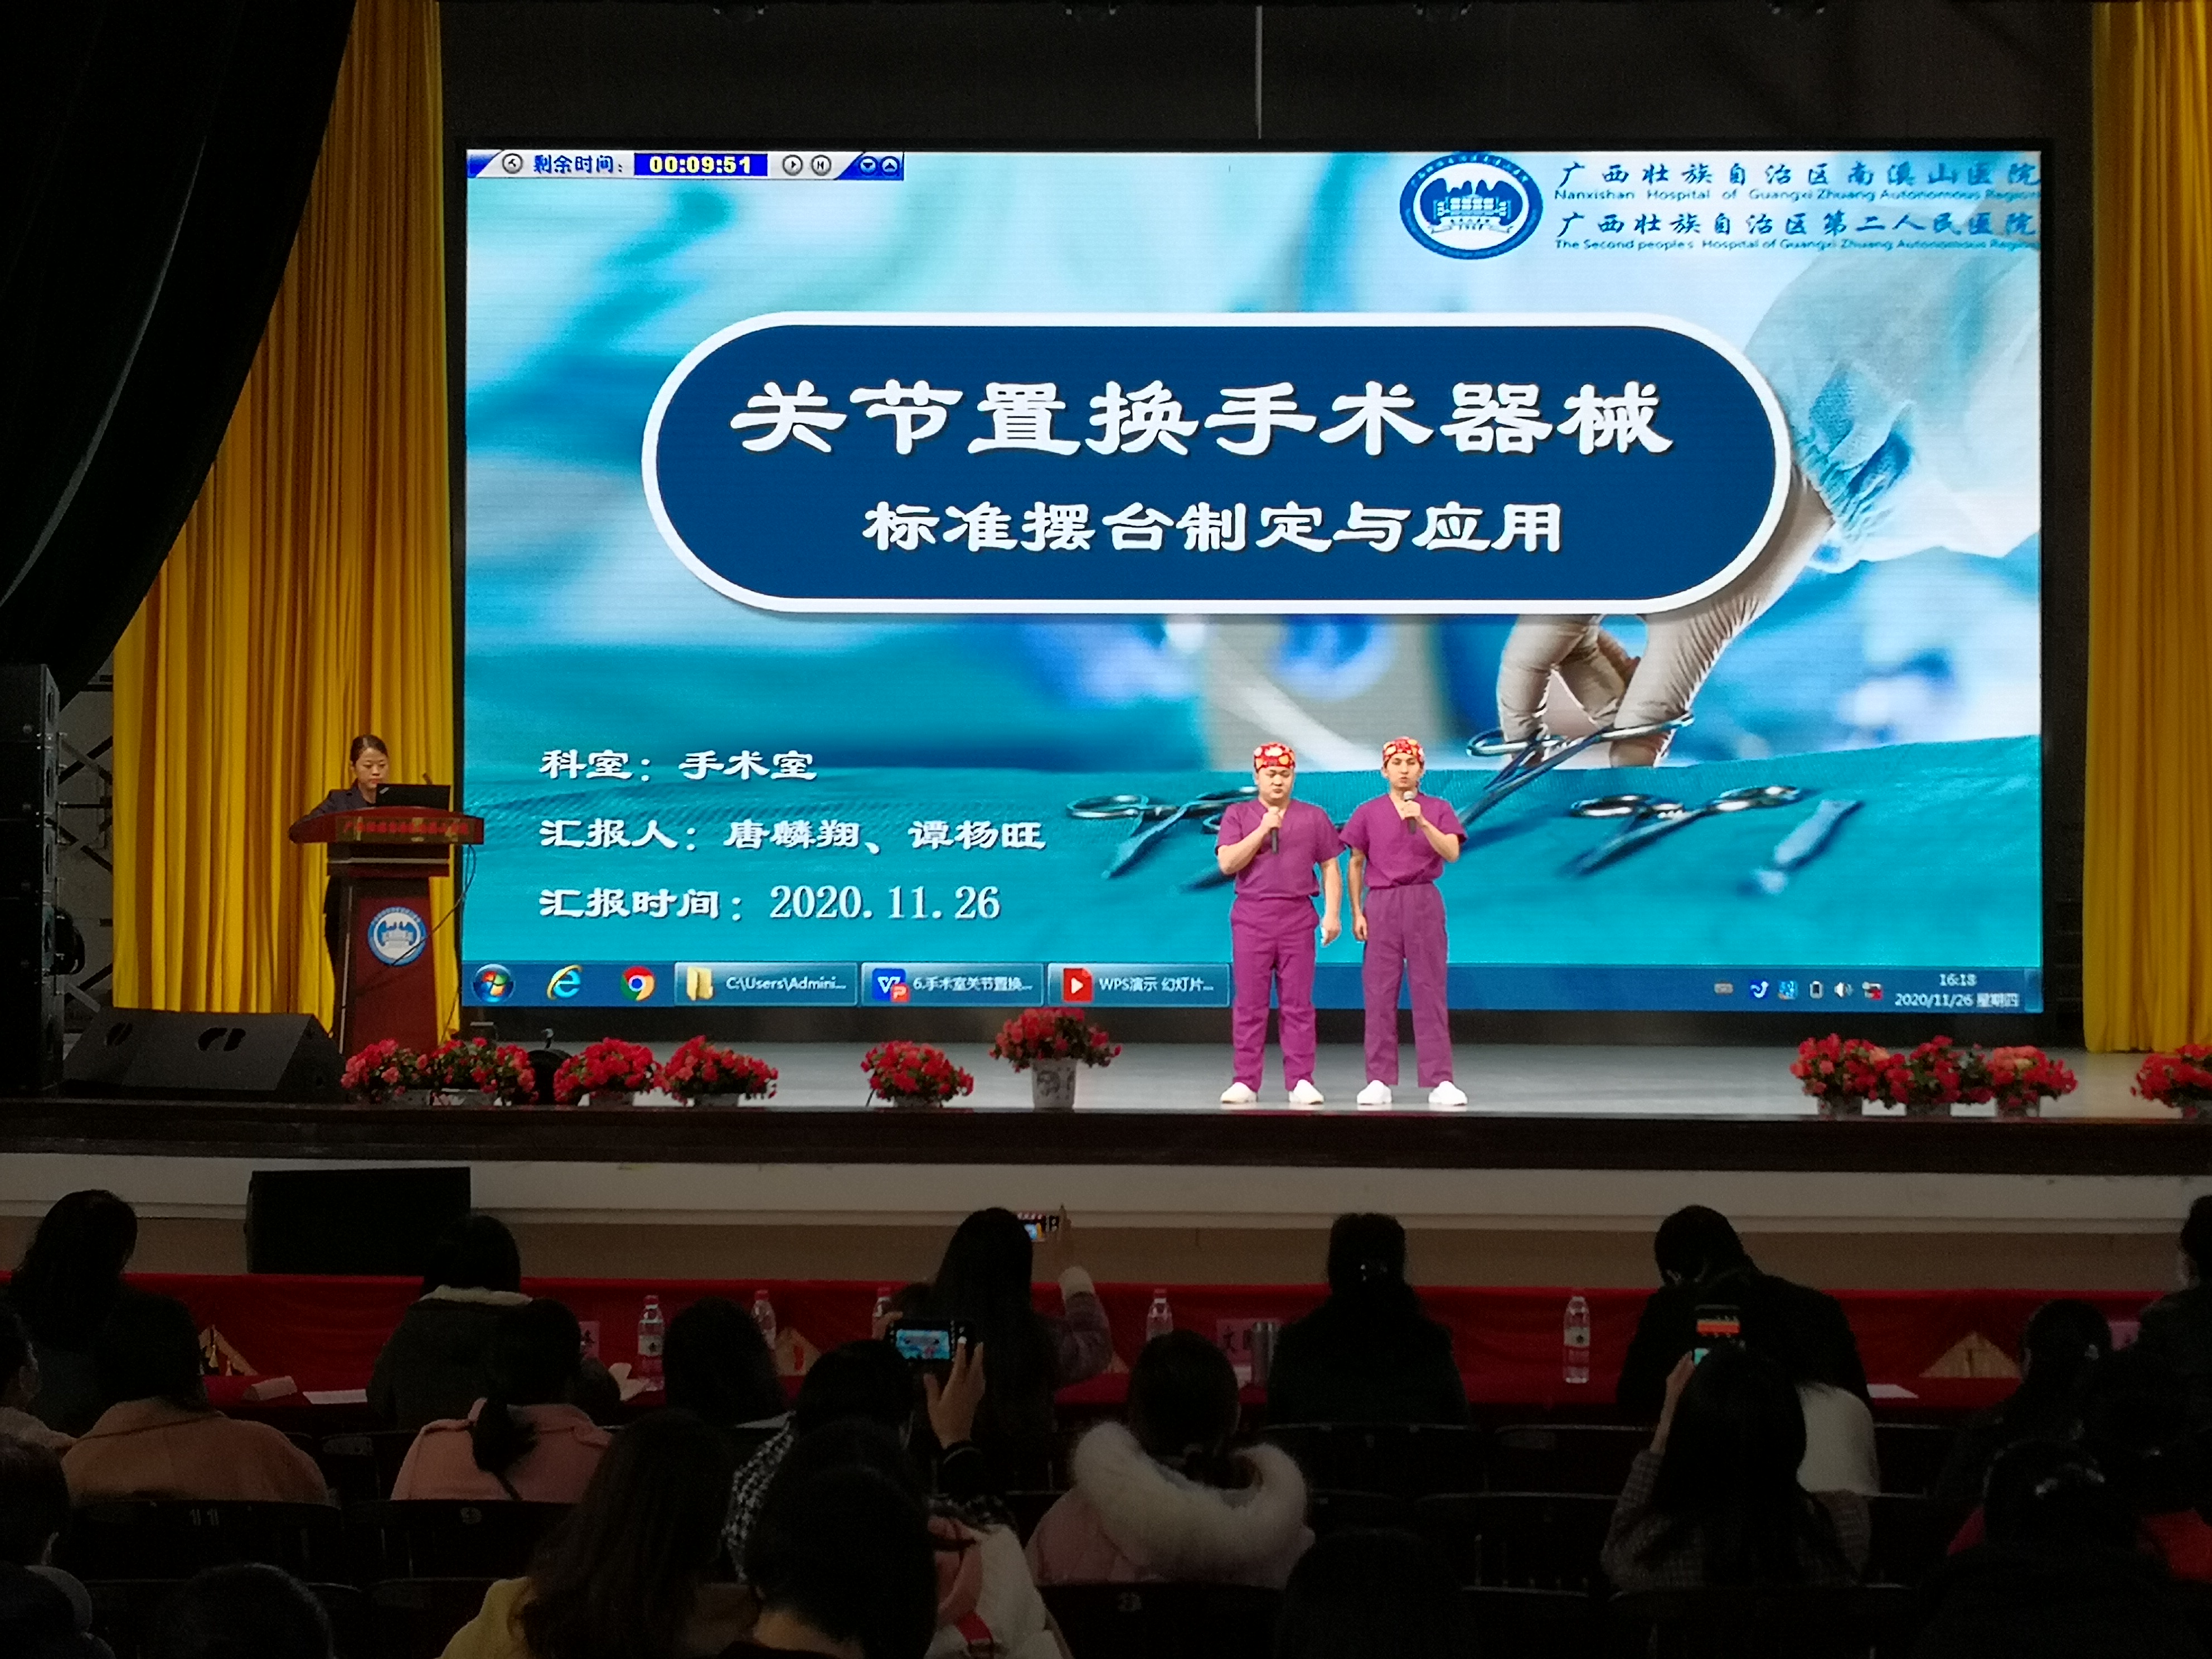 广西壮族自治区南溪山医院举办 2020 年度护理质量改善成果竞赛展示活动